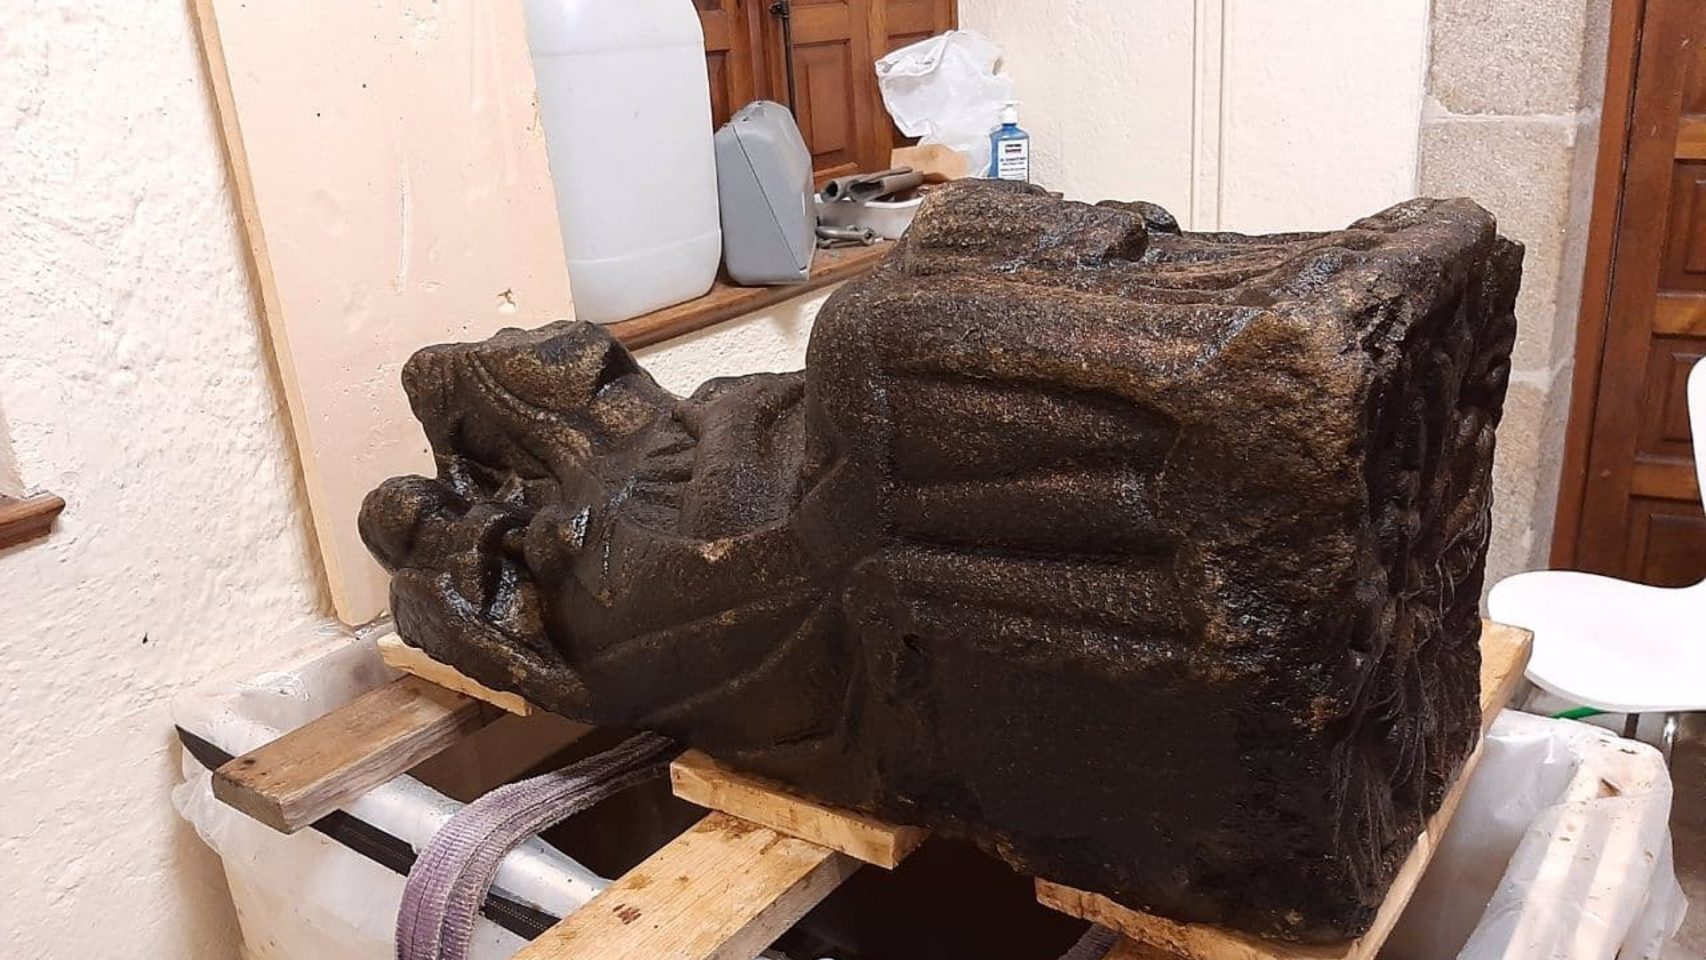 La pieza de la virgen en granito recuperada del río Sar durante el proceso de restauración.